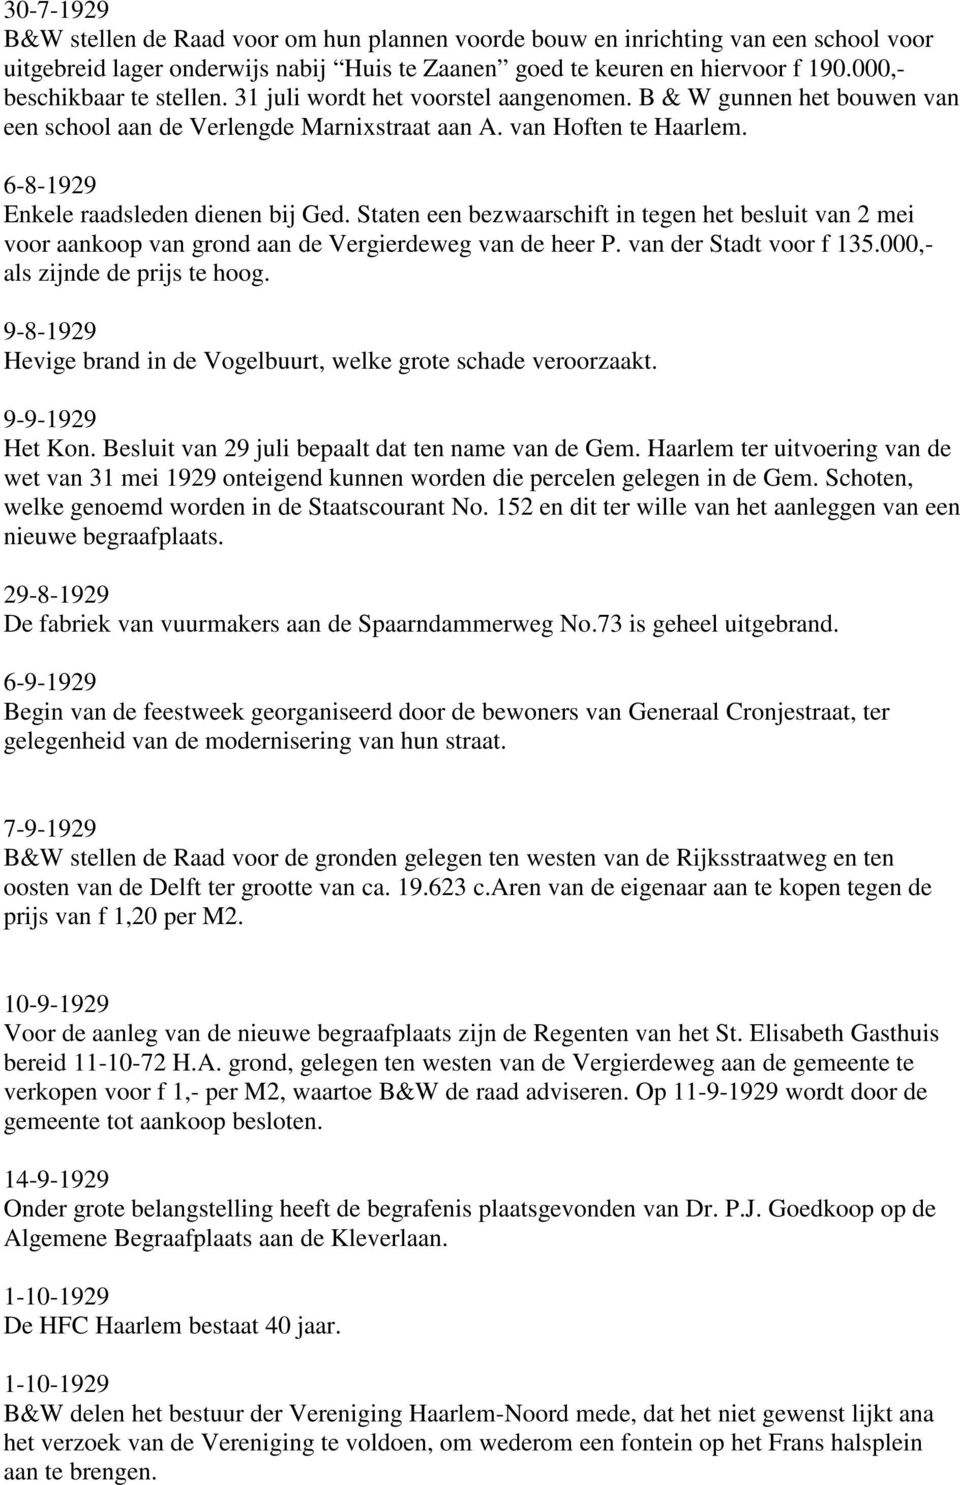 6-8-1929 Enkele raadsleden dienen bij Ged. Staten een bezwaarschift in tegen het besluit van 2 mei voor aankoop van grond aan de Vergierdeweg van de heer P. van der Stadt voor f 135.